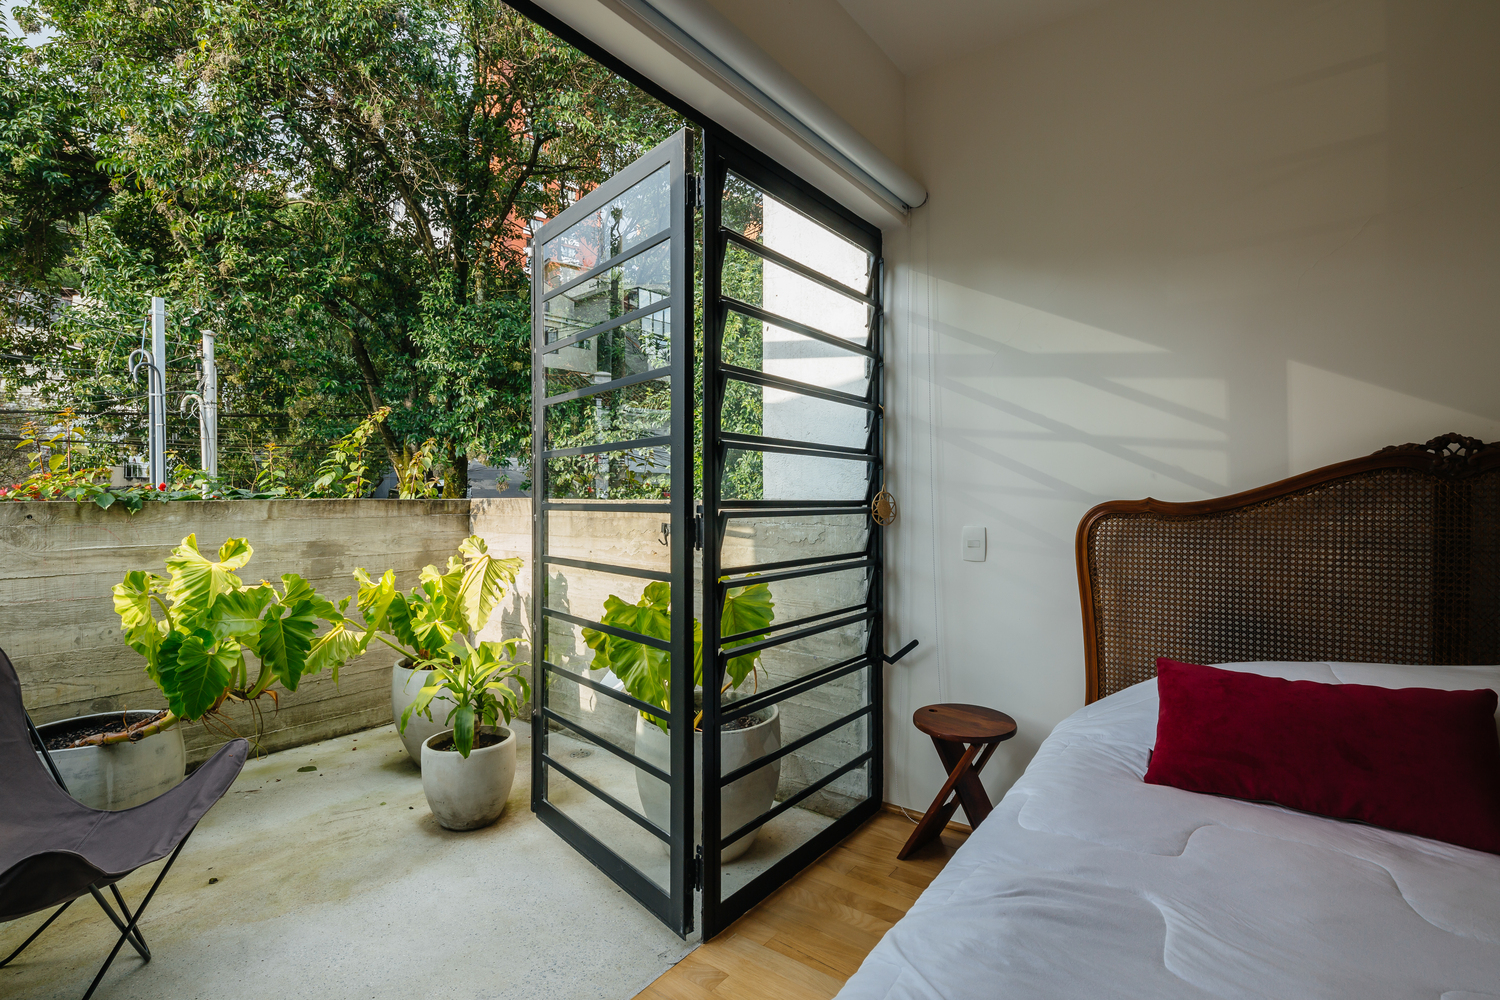 Hình ảnh khung cửa kính phòng ngủ mở ra ban công trồng cây xanh, đặt ghế ngồi thư giãn, tường bê tông